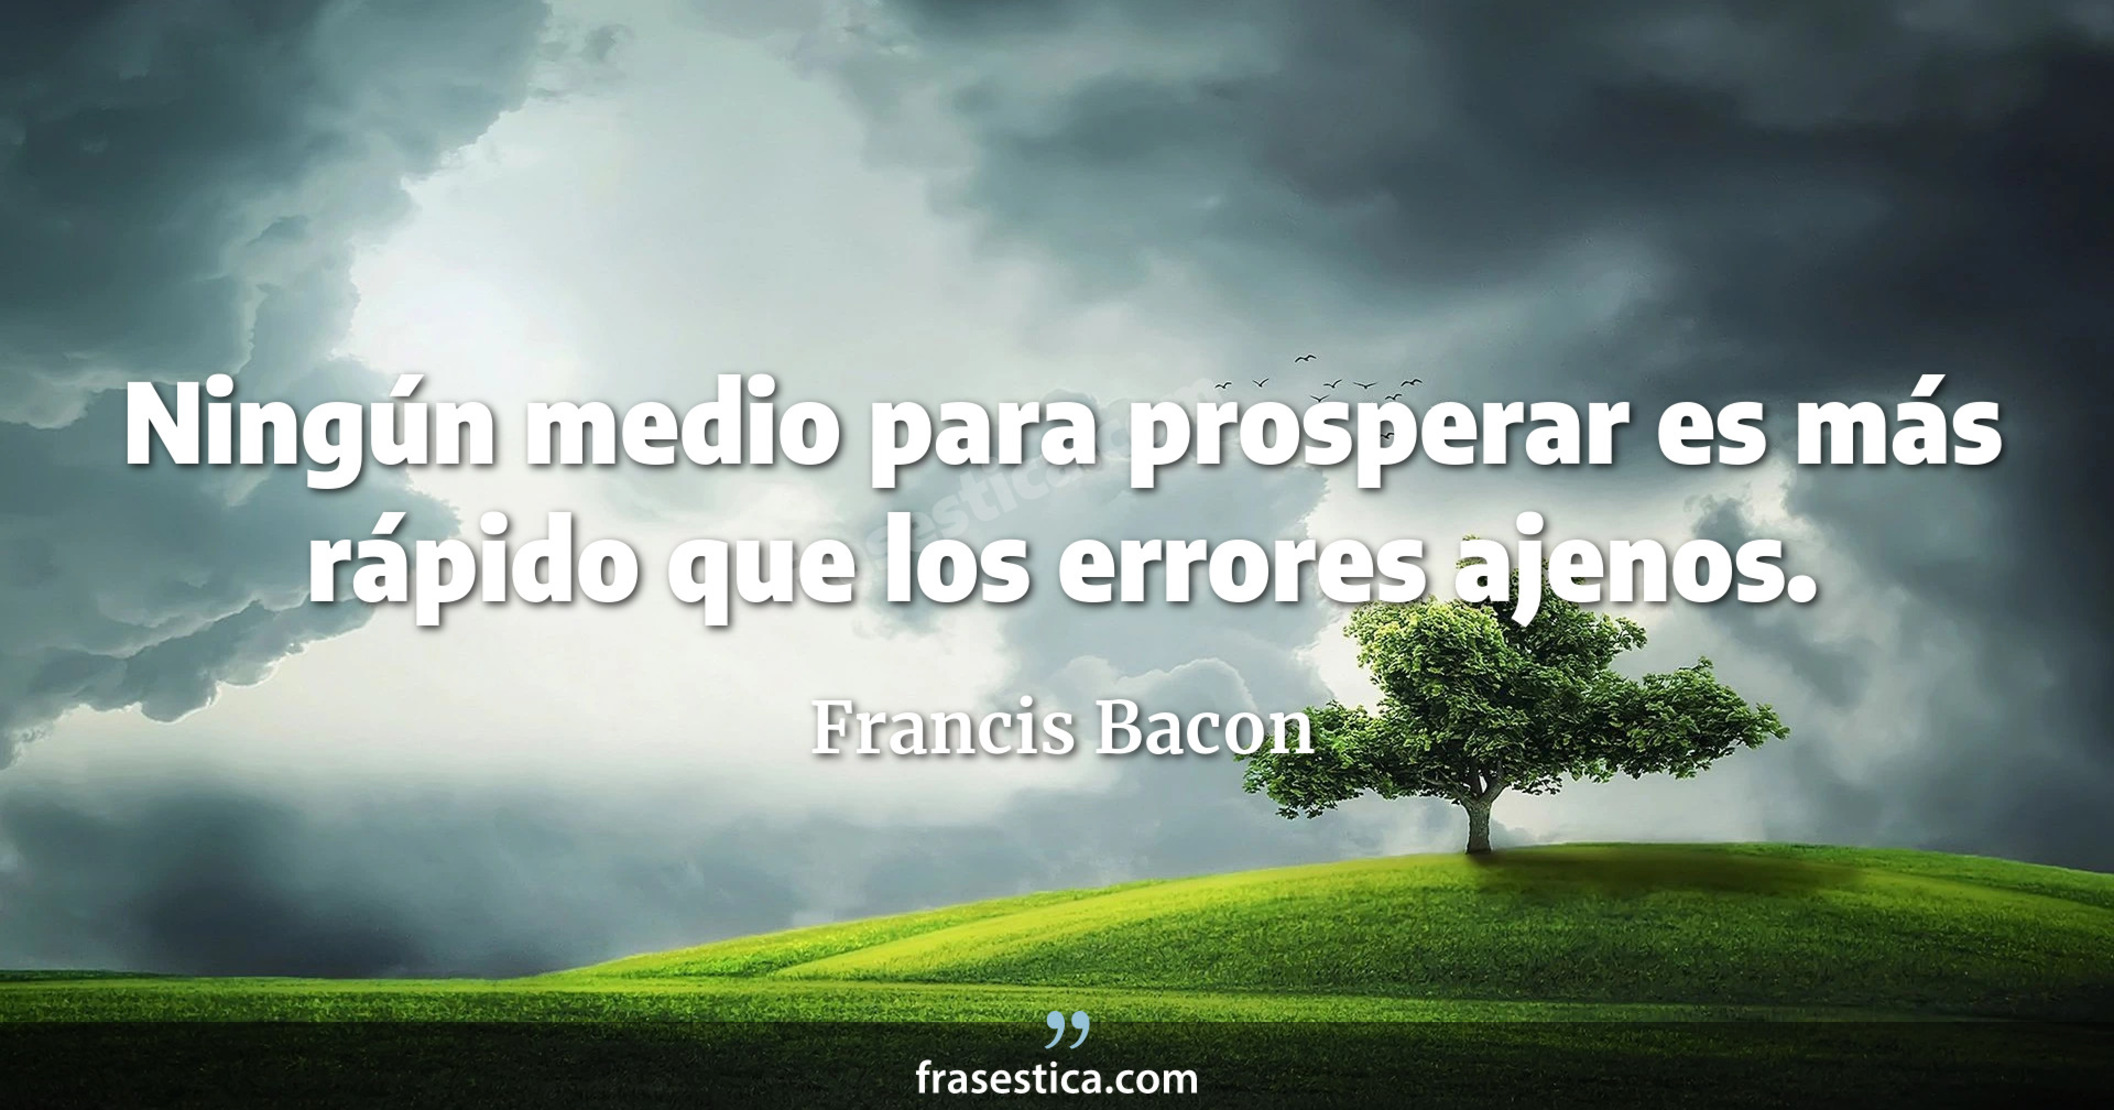 Ningún medio para prosperar es más rápido que los errores ajenos. - Francis Bacon